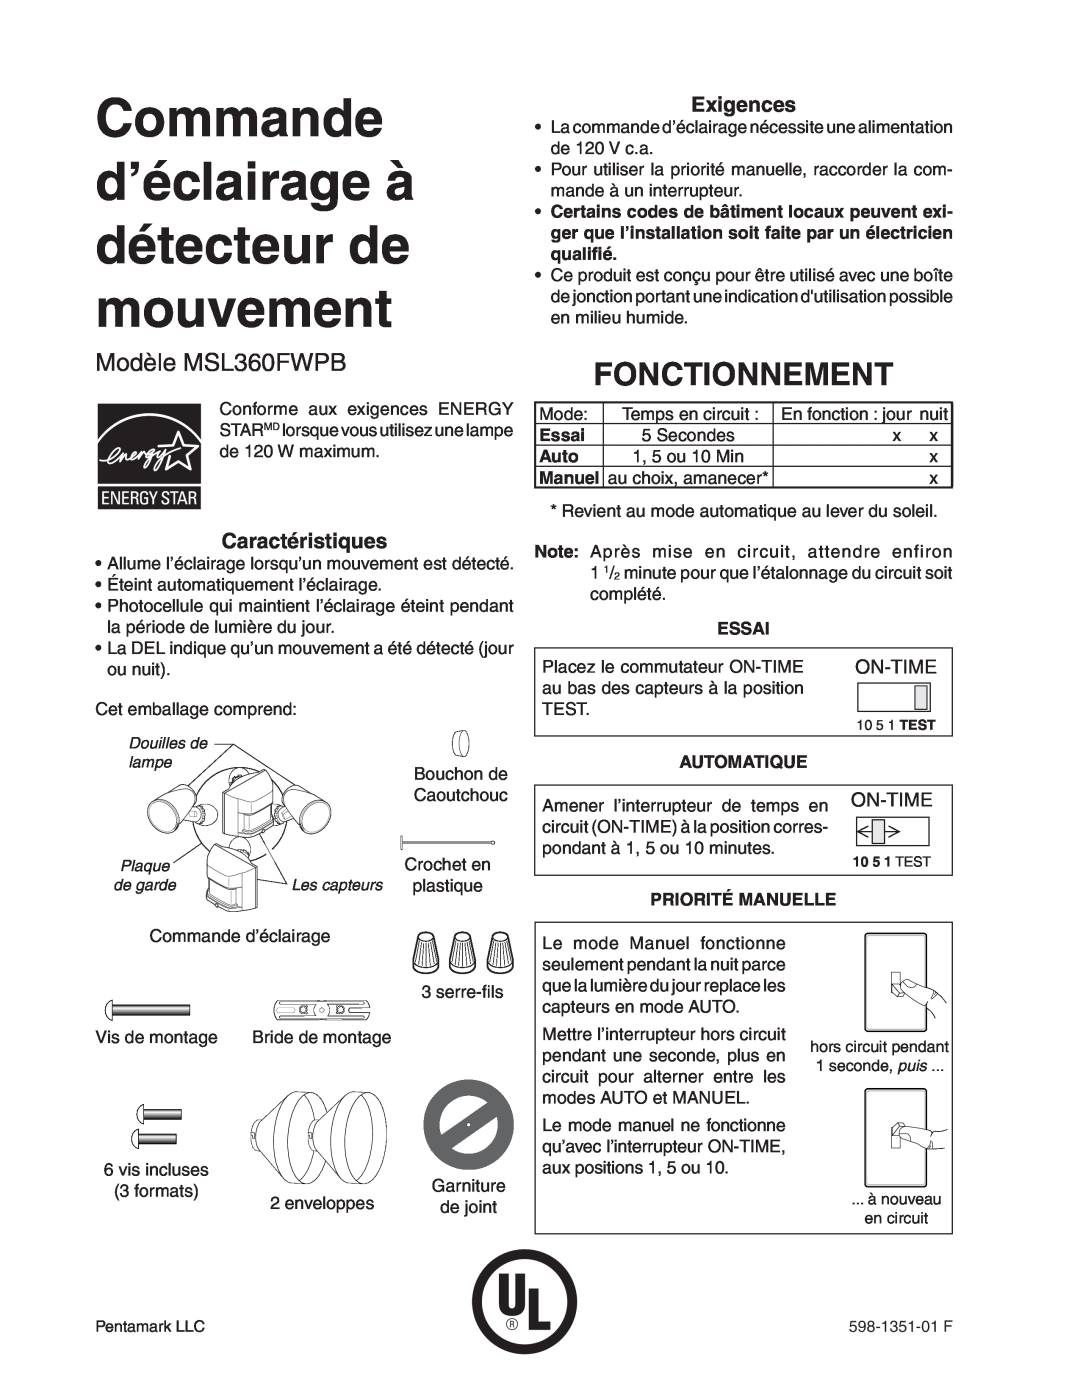 Heath Zenith manual Commande d’éclairage à détecteur de mouvement, Fonctionnement, Modèle MSL360FWPB, Caractéristiques 